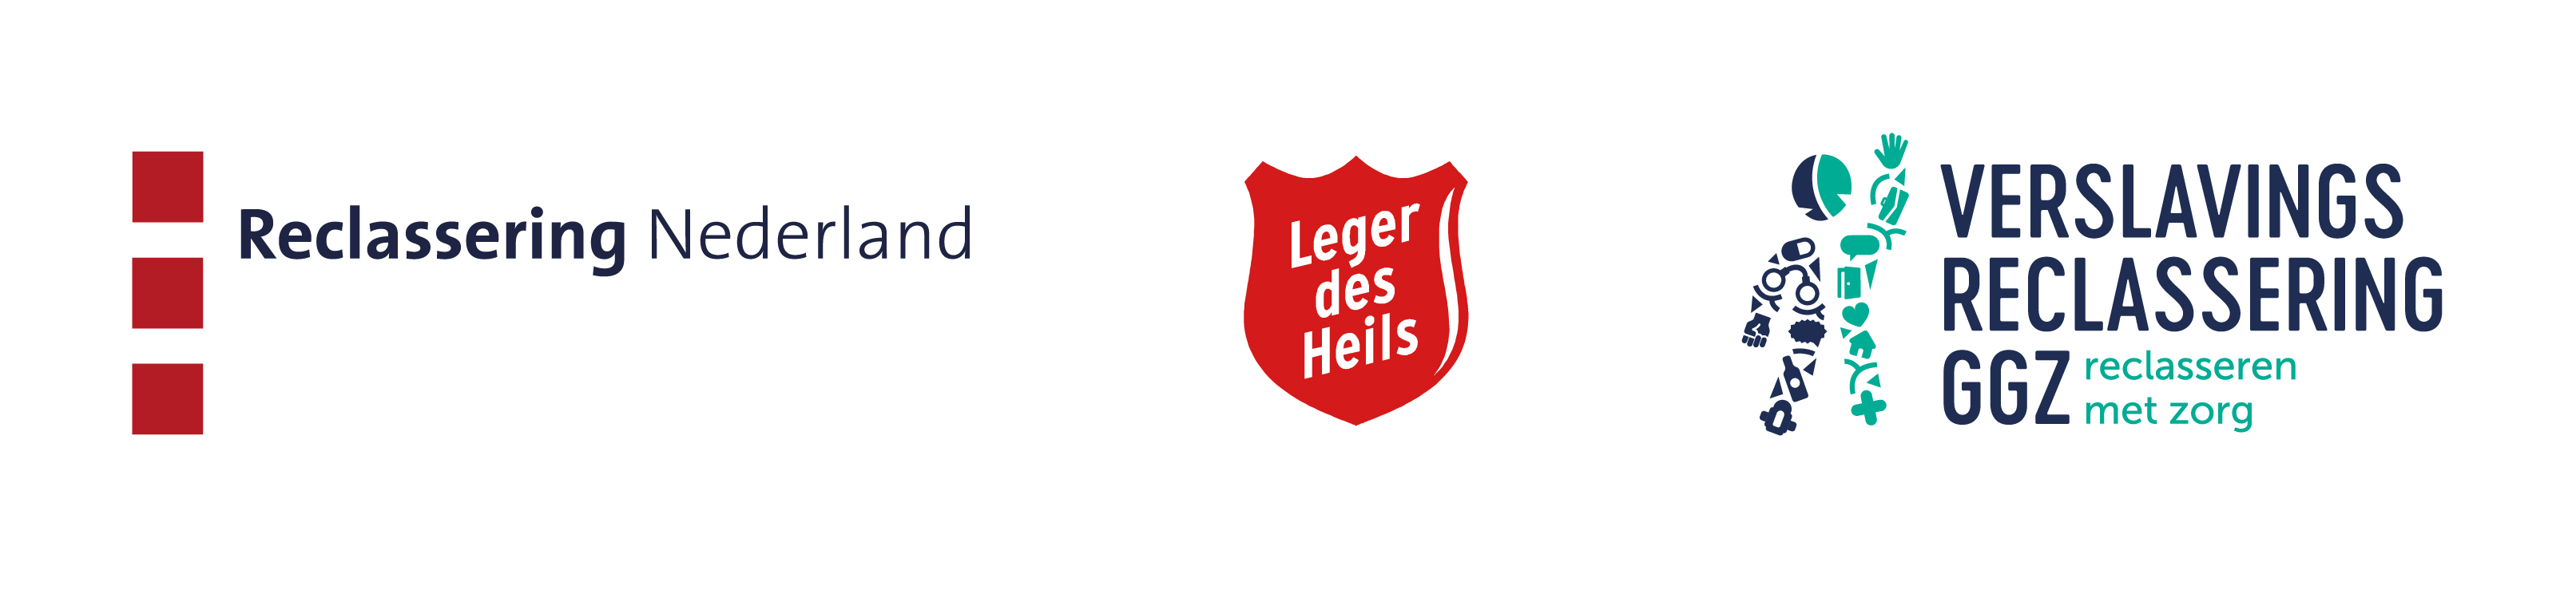 Logo's van de drie reclasseringsorganisaties: Reclassering Nederland, Leger des Heils en Stichting Verslavingsreclassering GGZ (SVG).